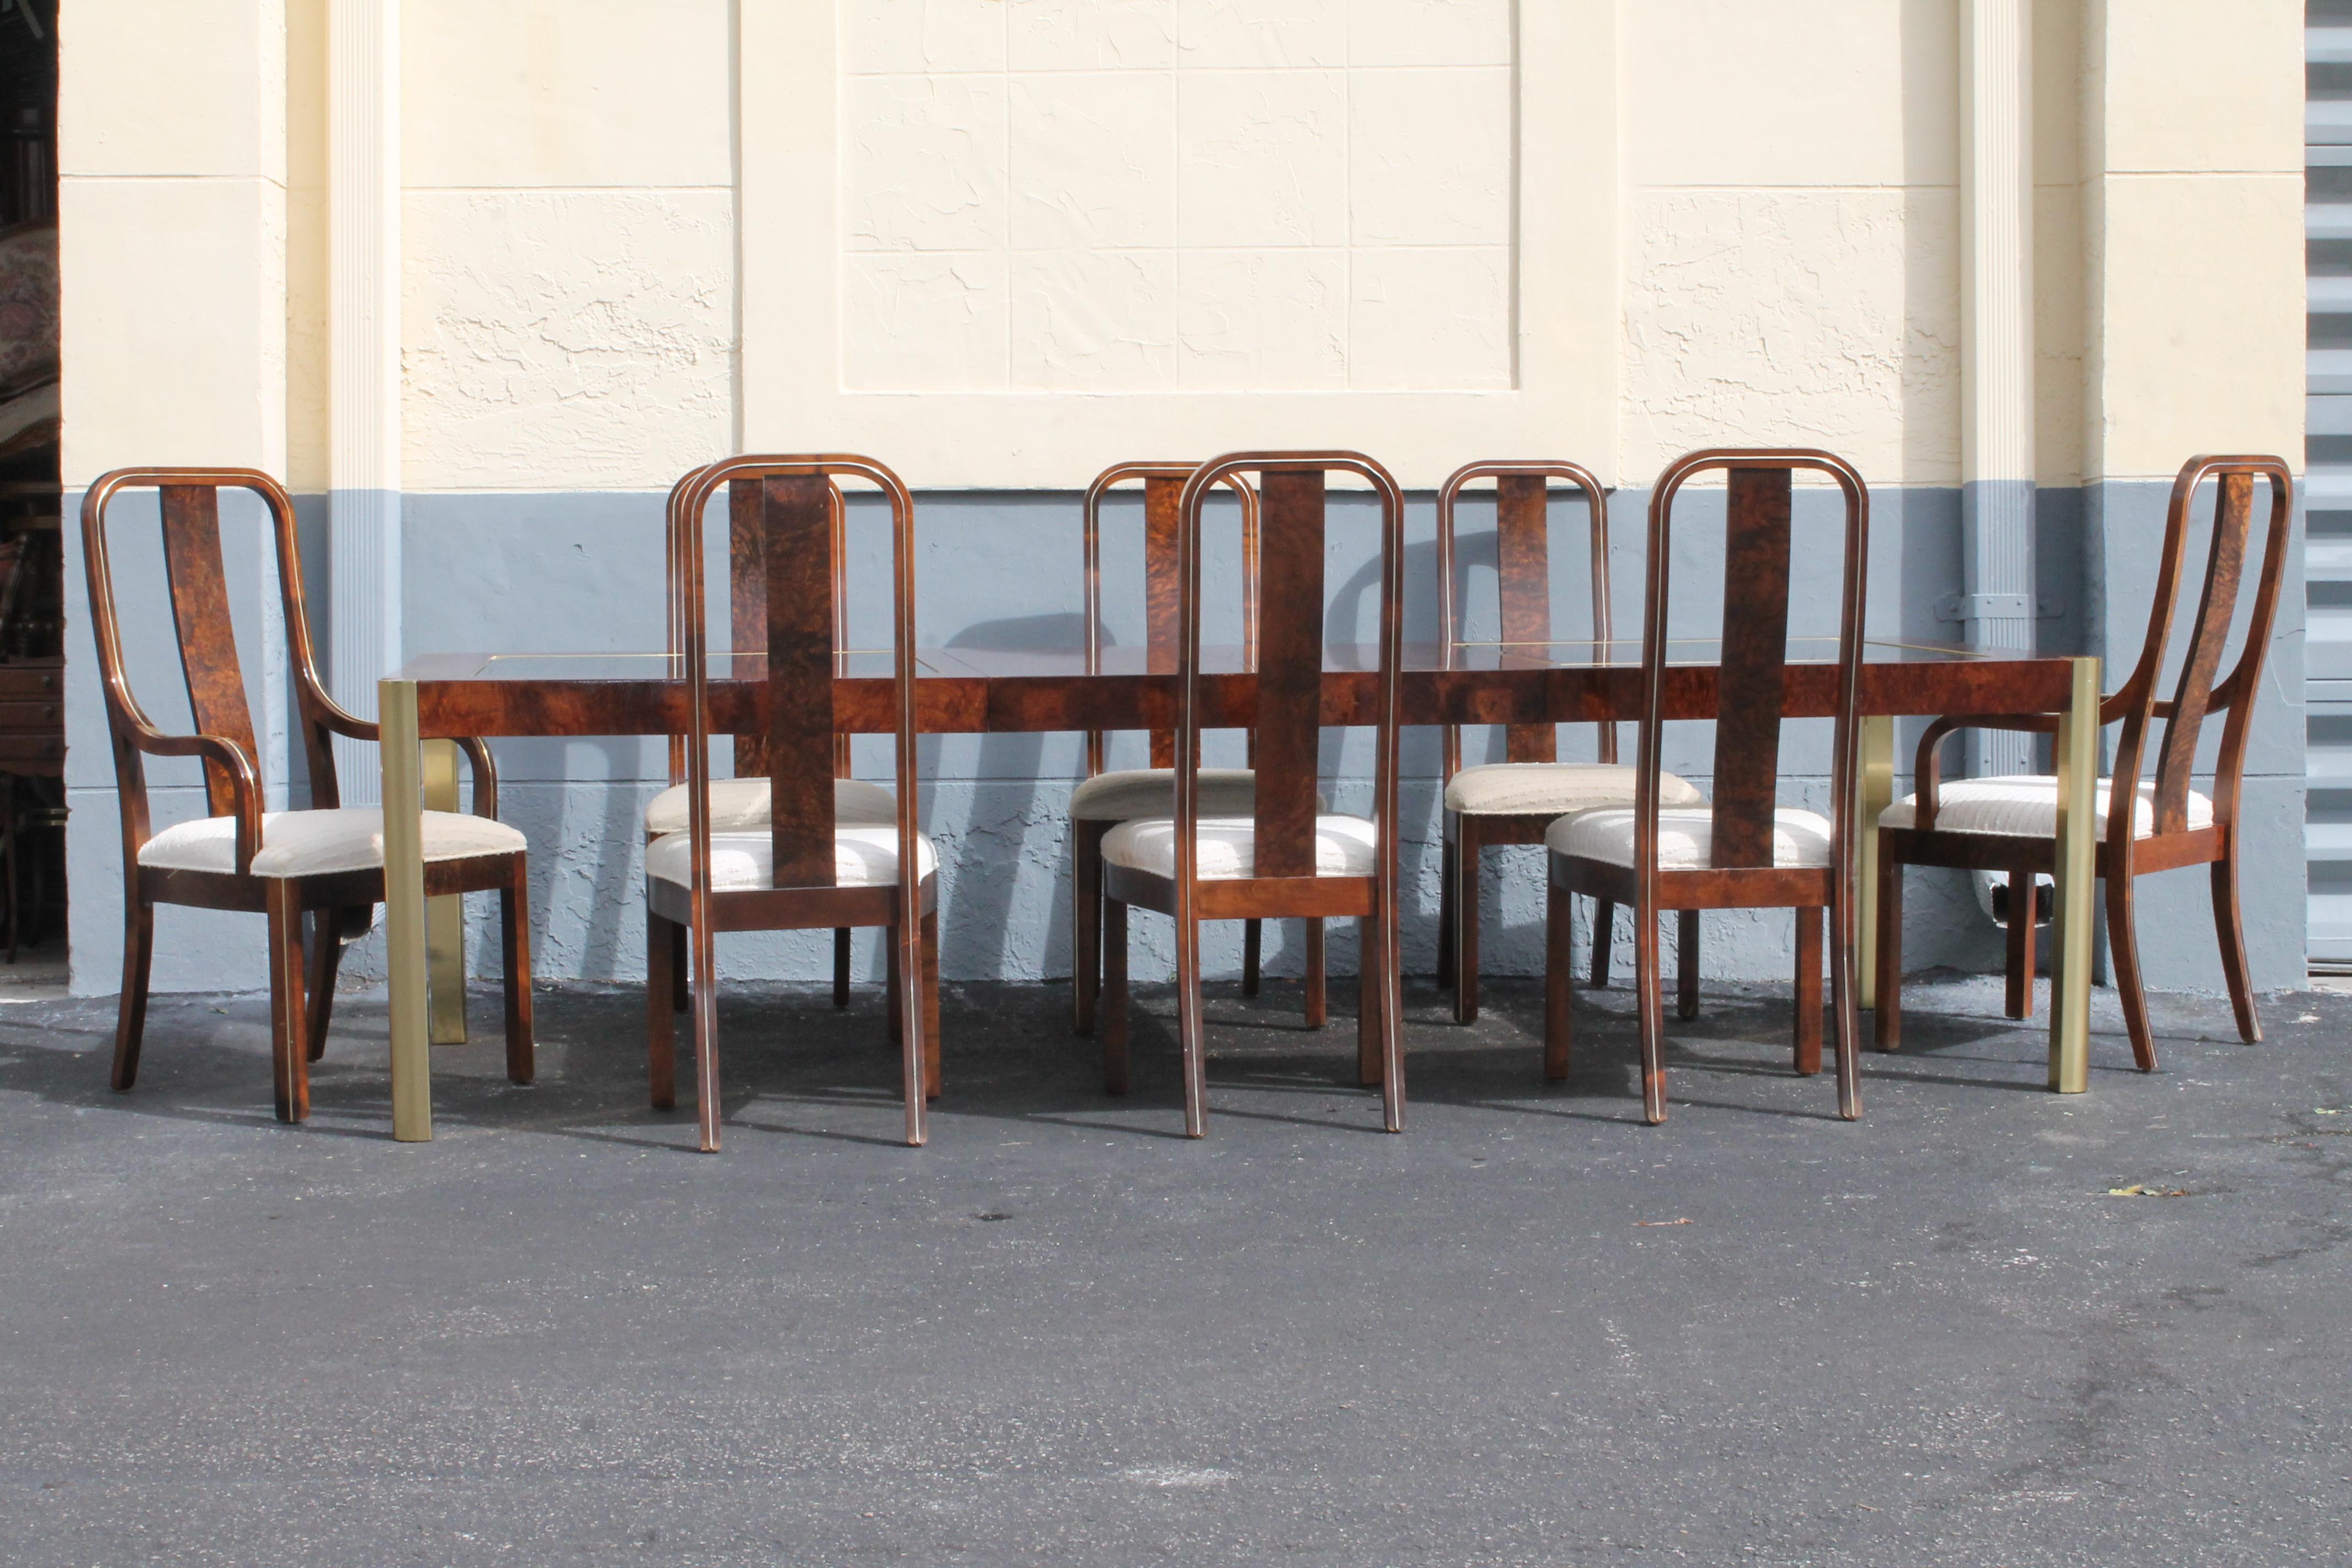 Ultra Modernes 11-teiliges Esstischset von Century Furniture aus den 1970er Jahren. Exotisches Wurzelholz mit abgeschrägter, bronzefarbener Glasplatte. 8 Stühle, atemberaubendes Design aus gebogenem Wurzelholz. 2 Sessel und 6 Beistellstühle,